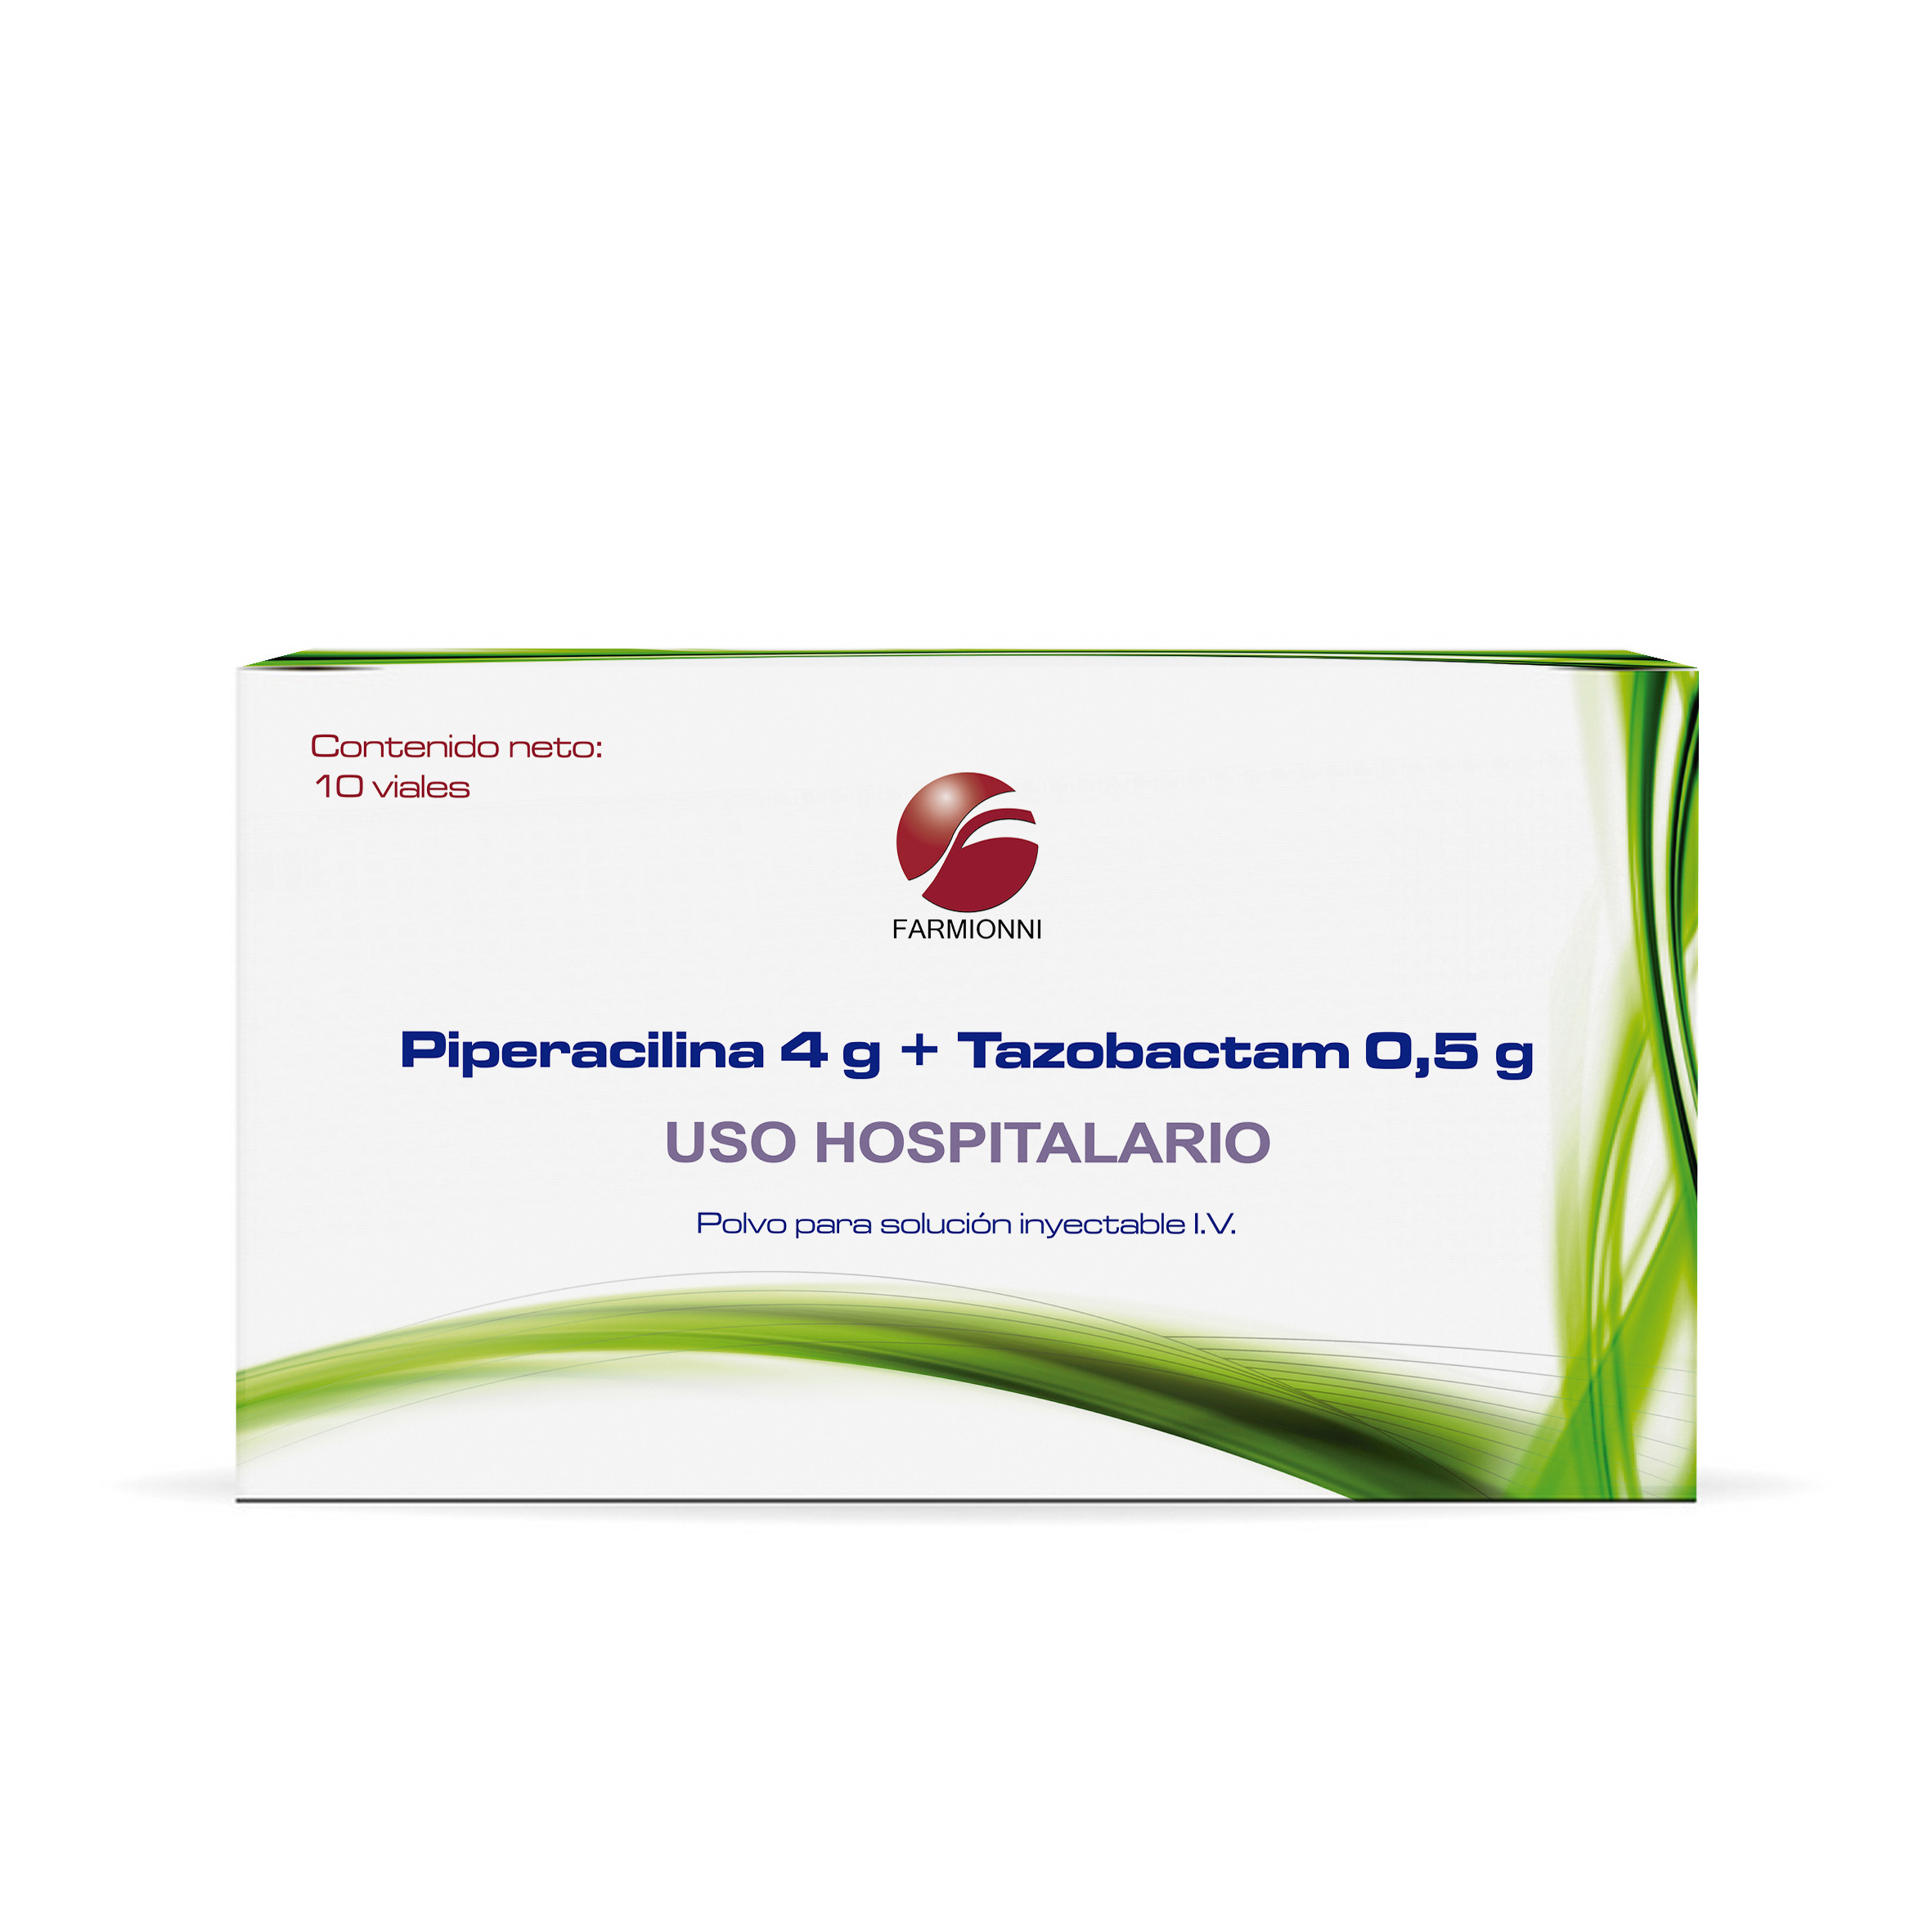 Piperacilina + Tazobactam